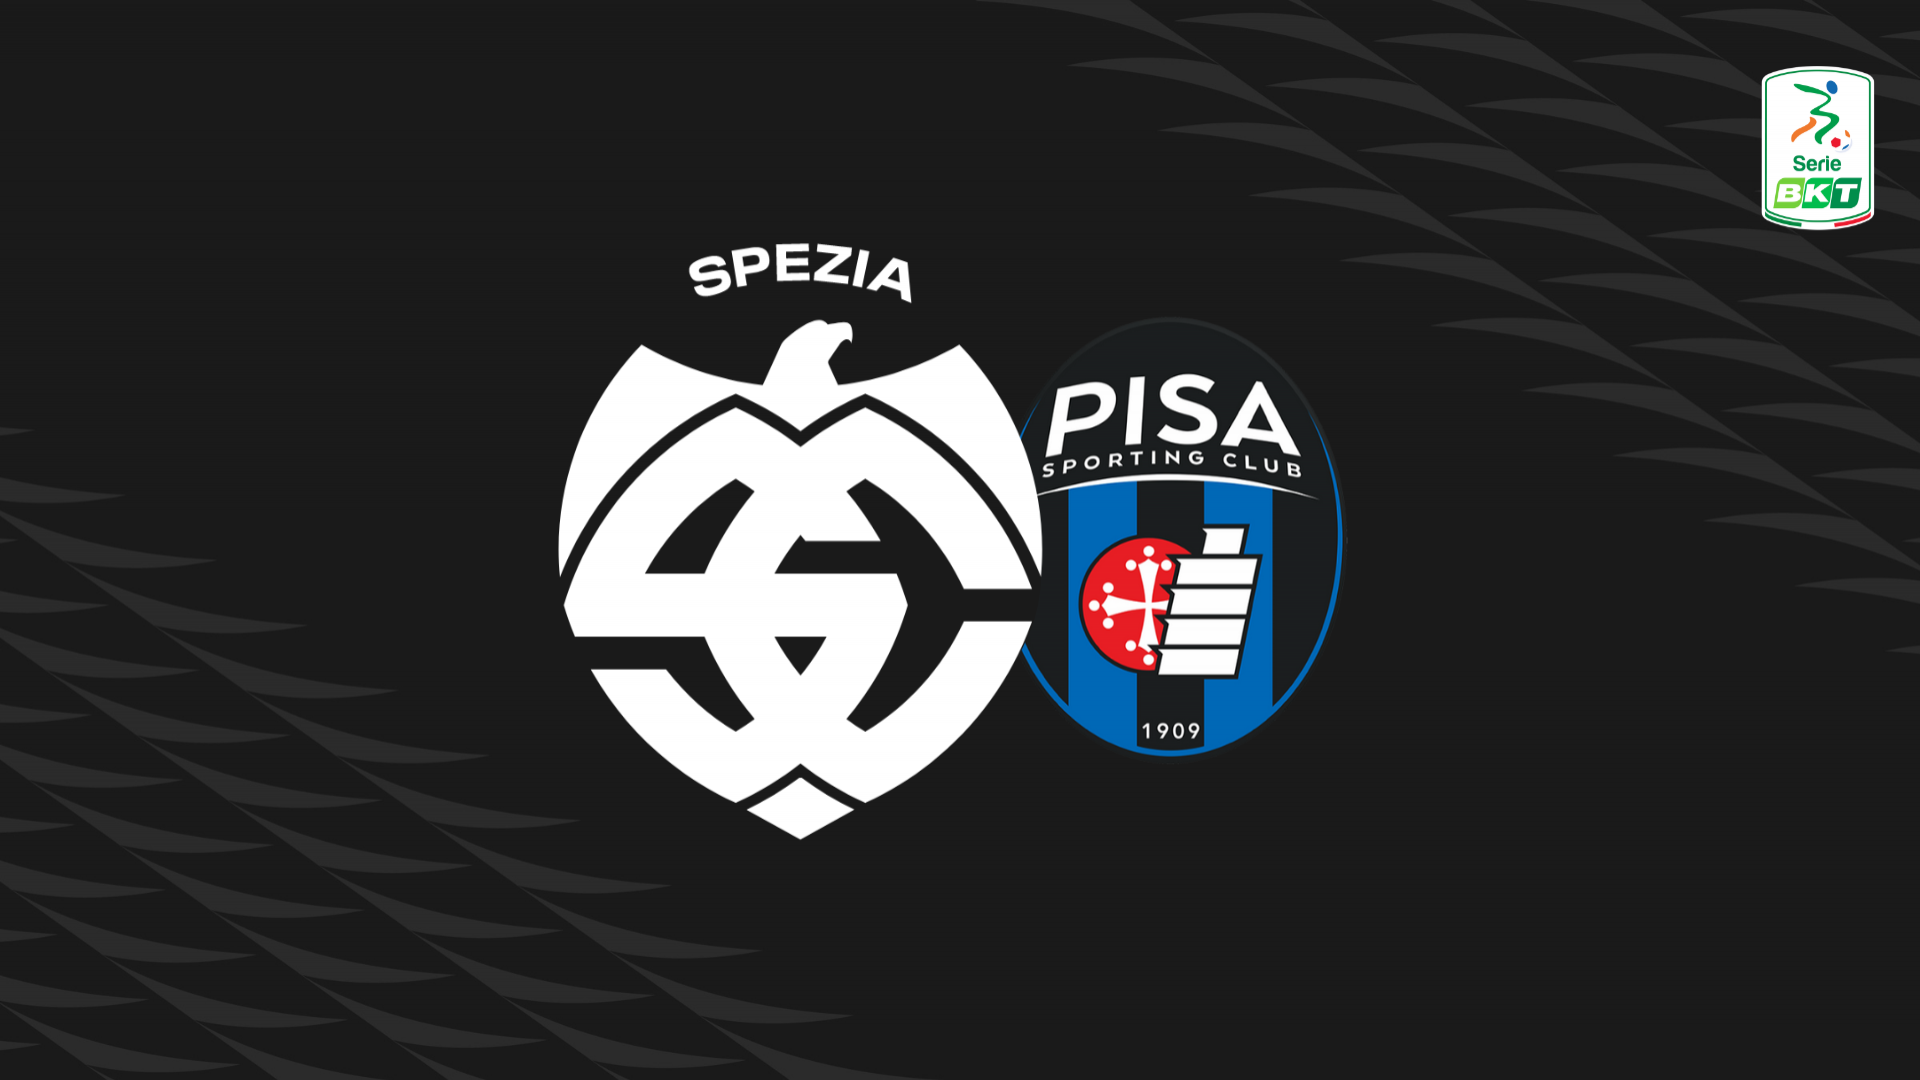 Serie BKT: Spezia-Pisa 0-0